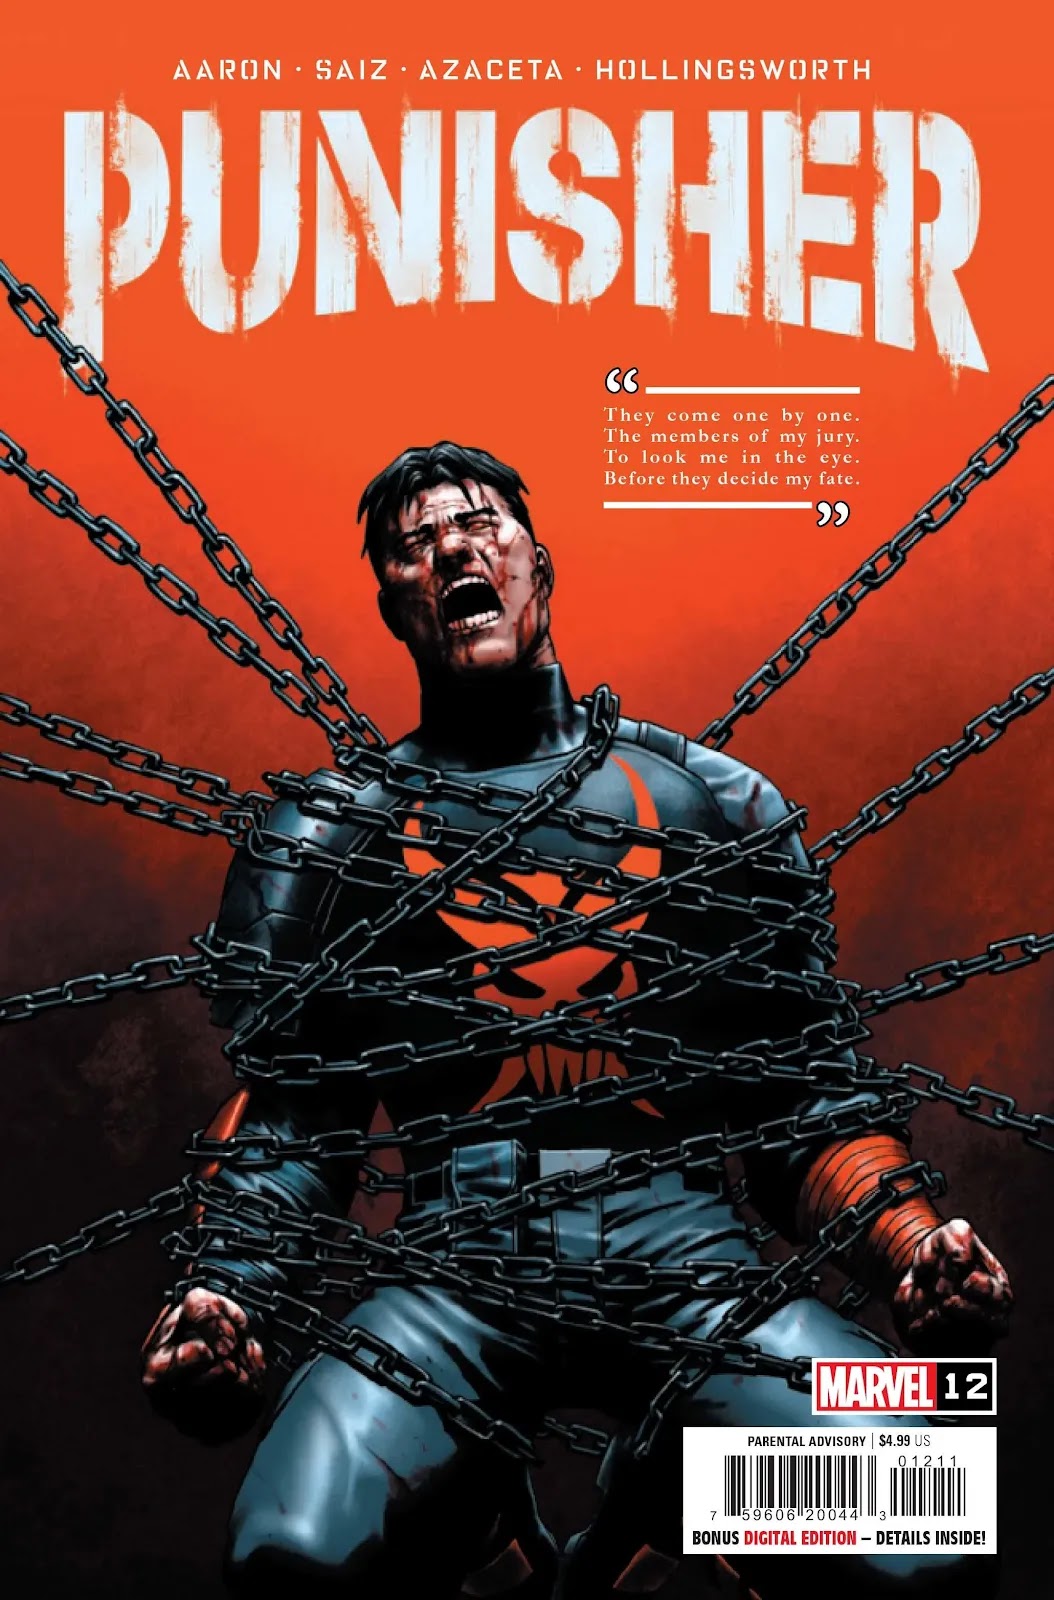 Universo Marvel 616: O novo Justiceiro terá que encarar o 'Plantão Noturno'  em preview de Punisher #2